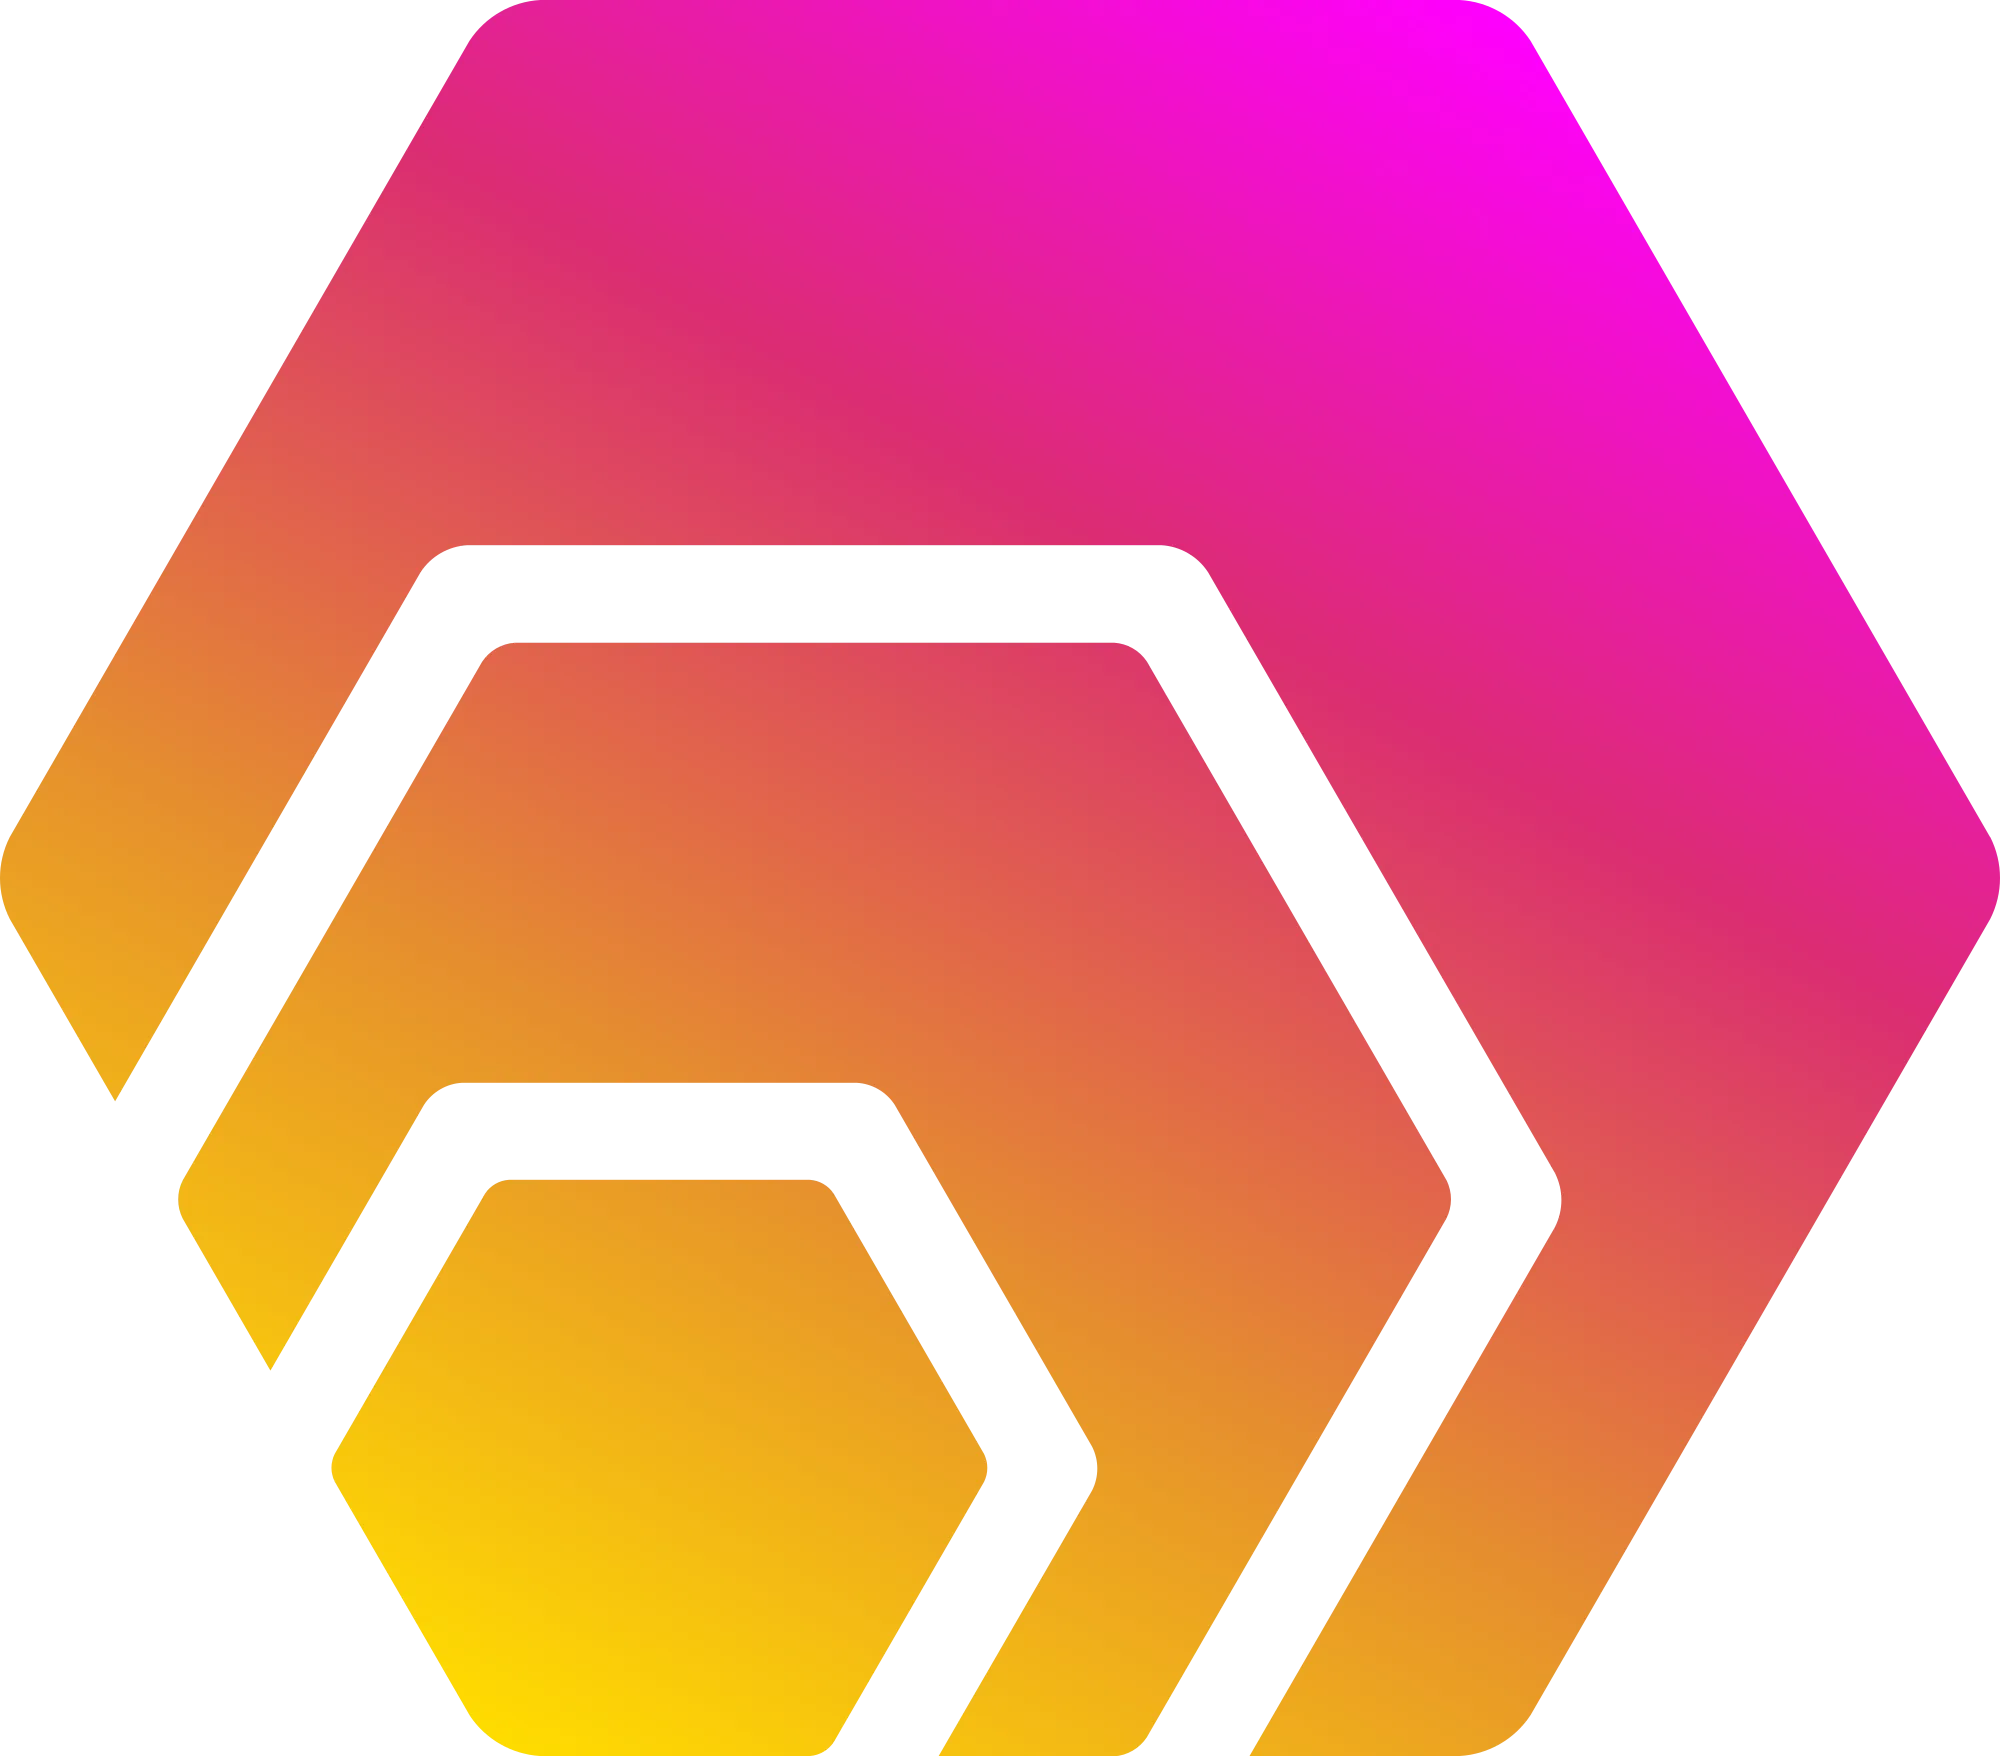 HEX (HEX) logo